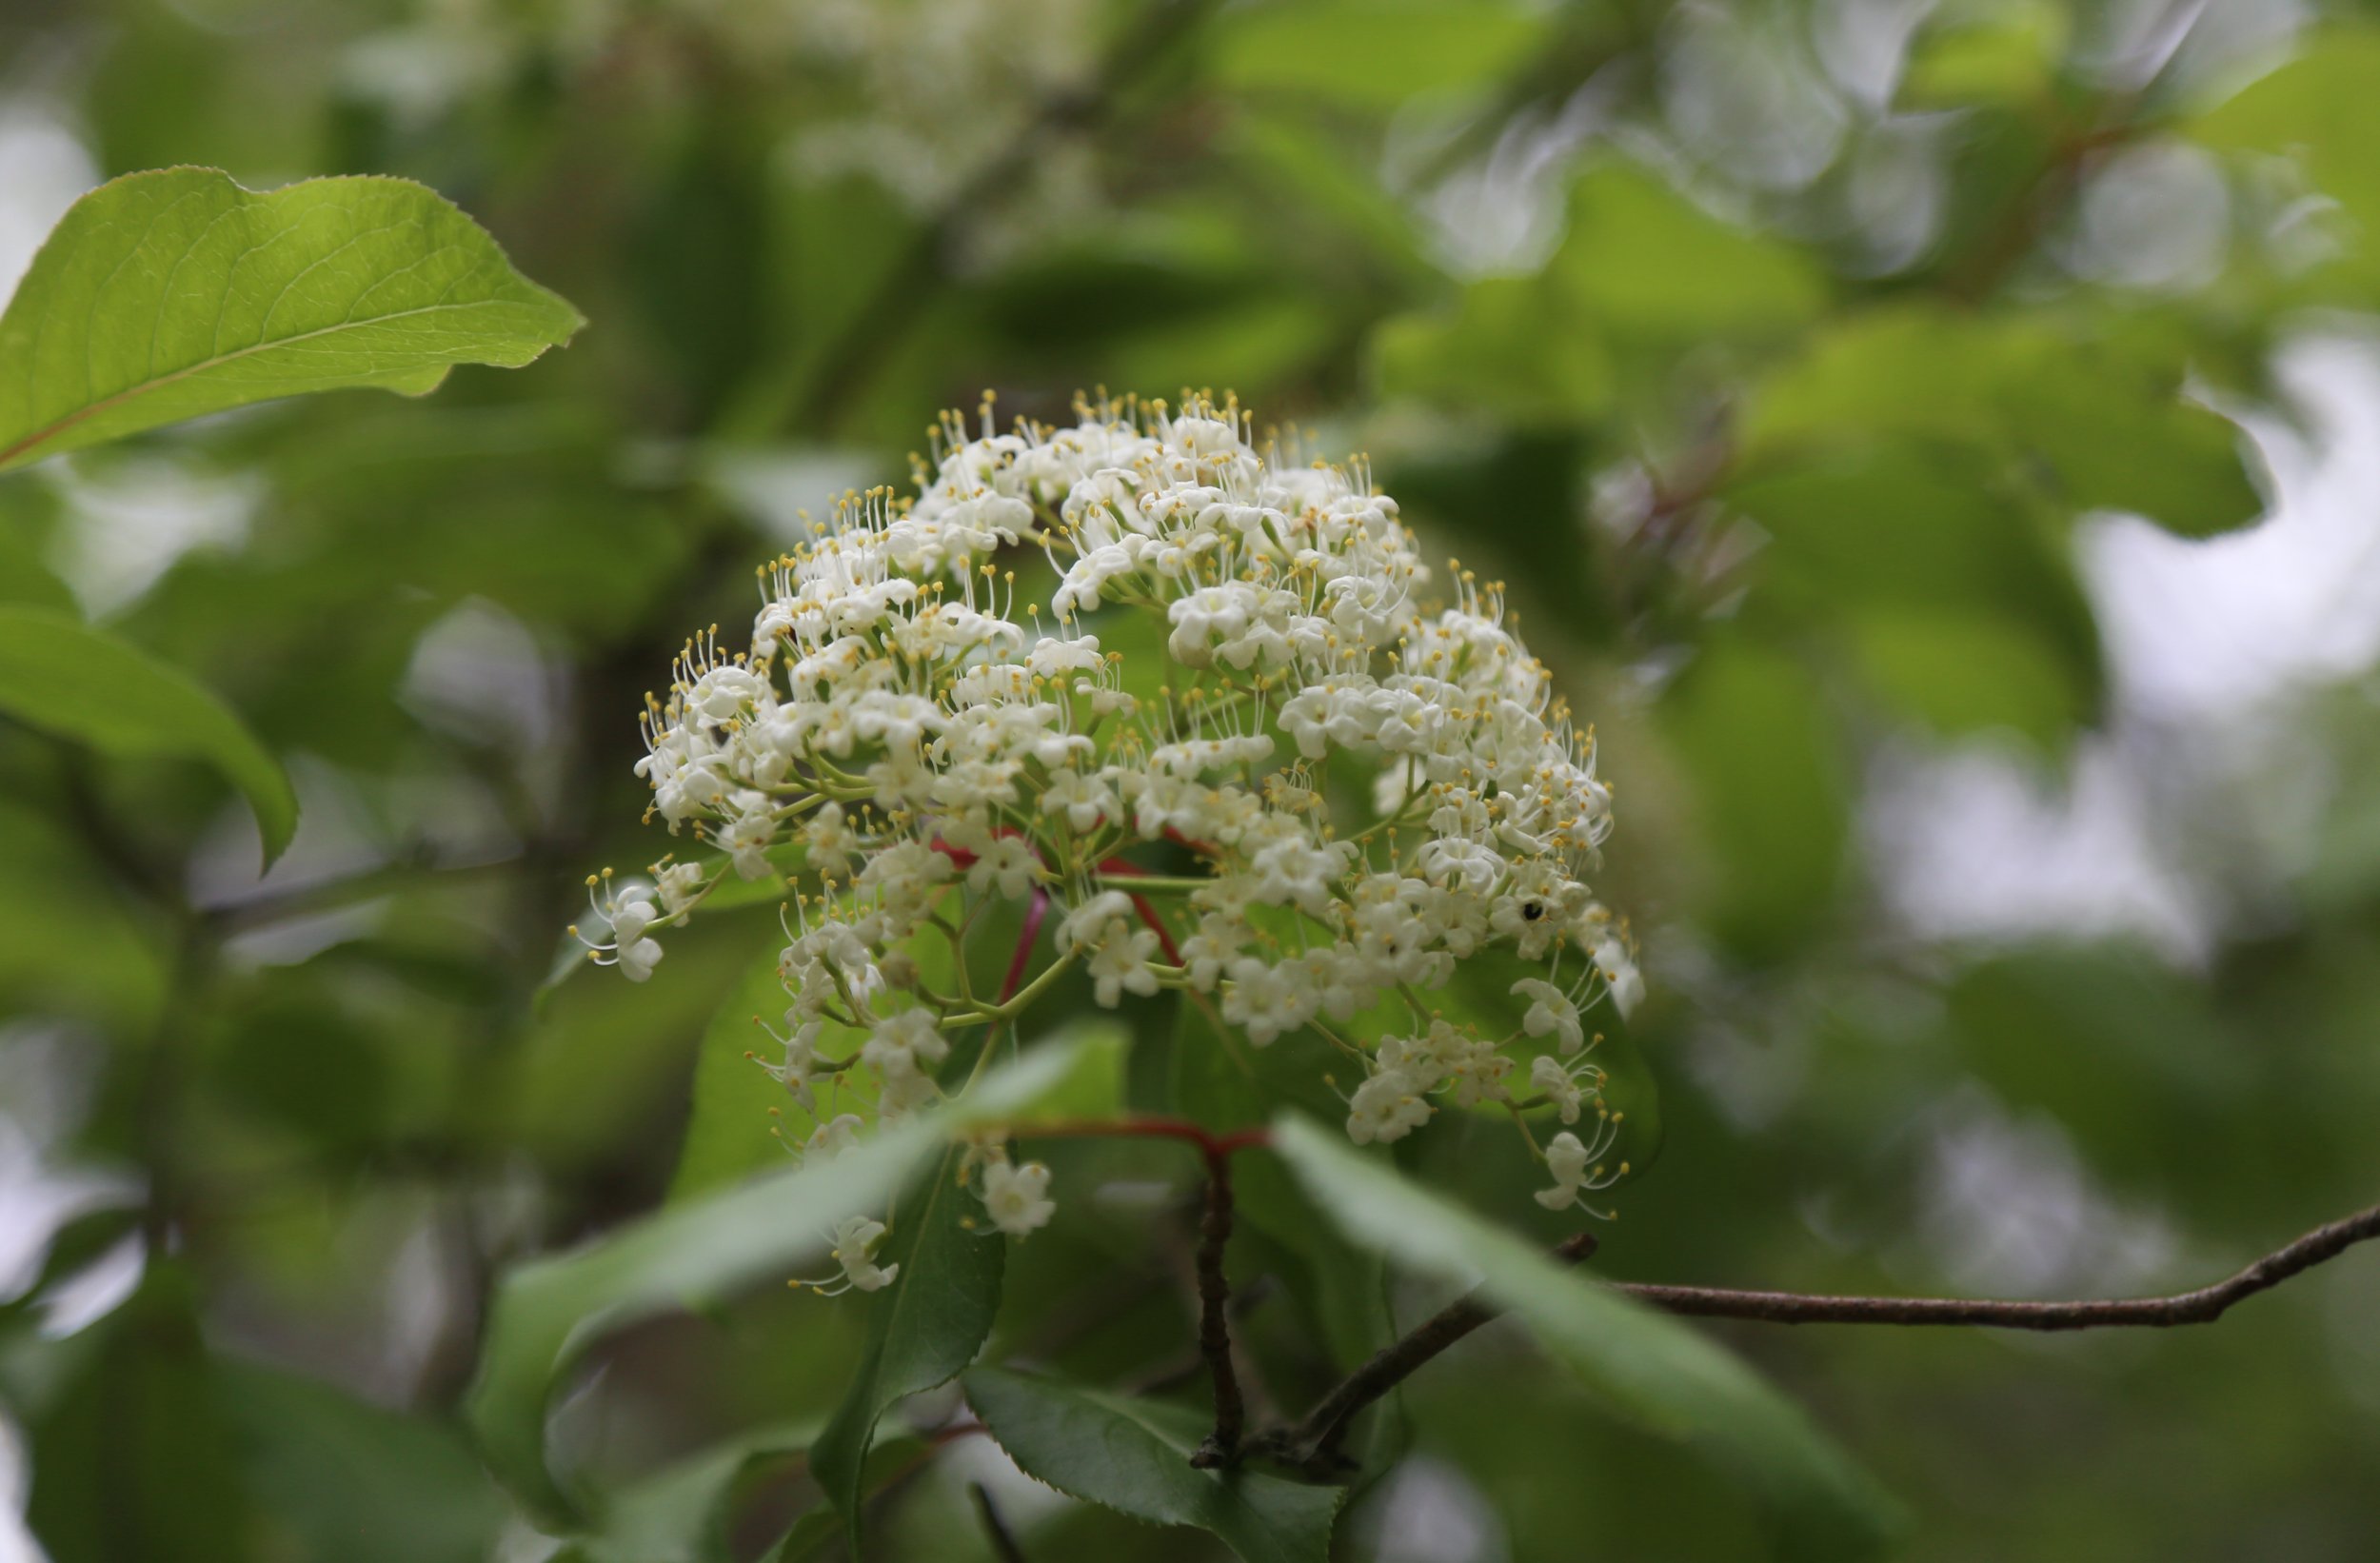  Blackhaw (Viburnumm prunifolium) 